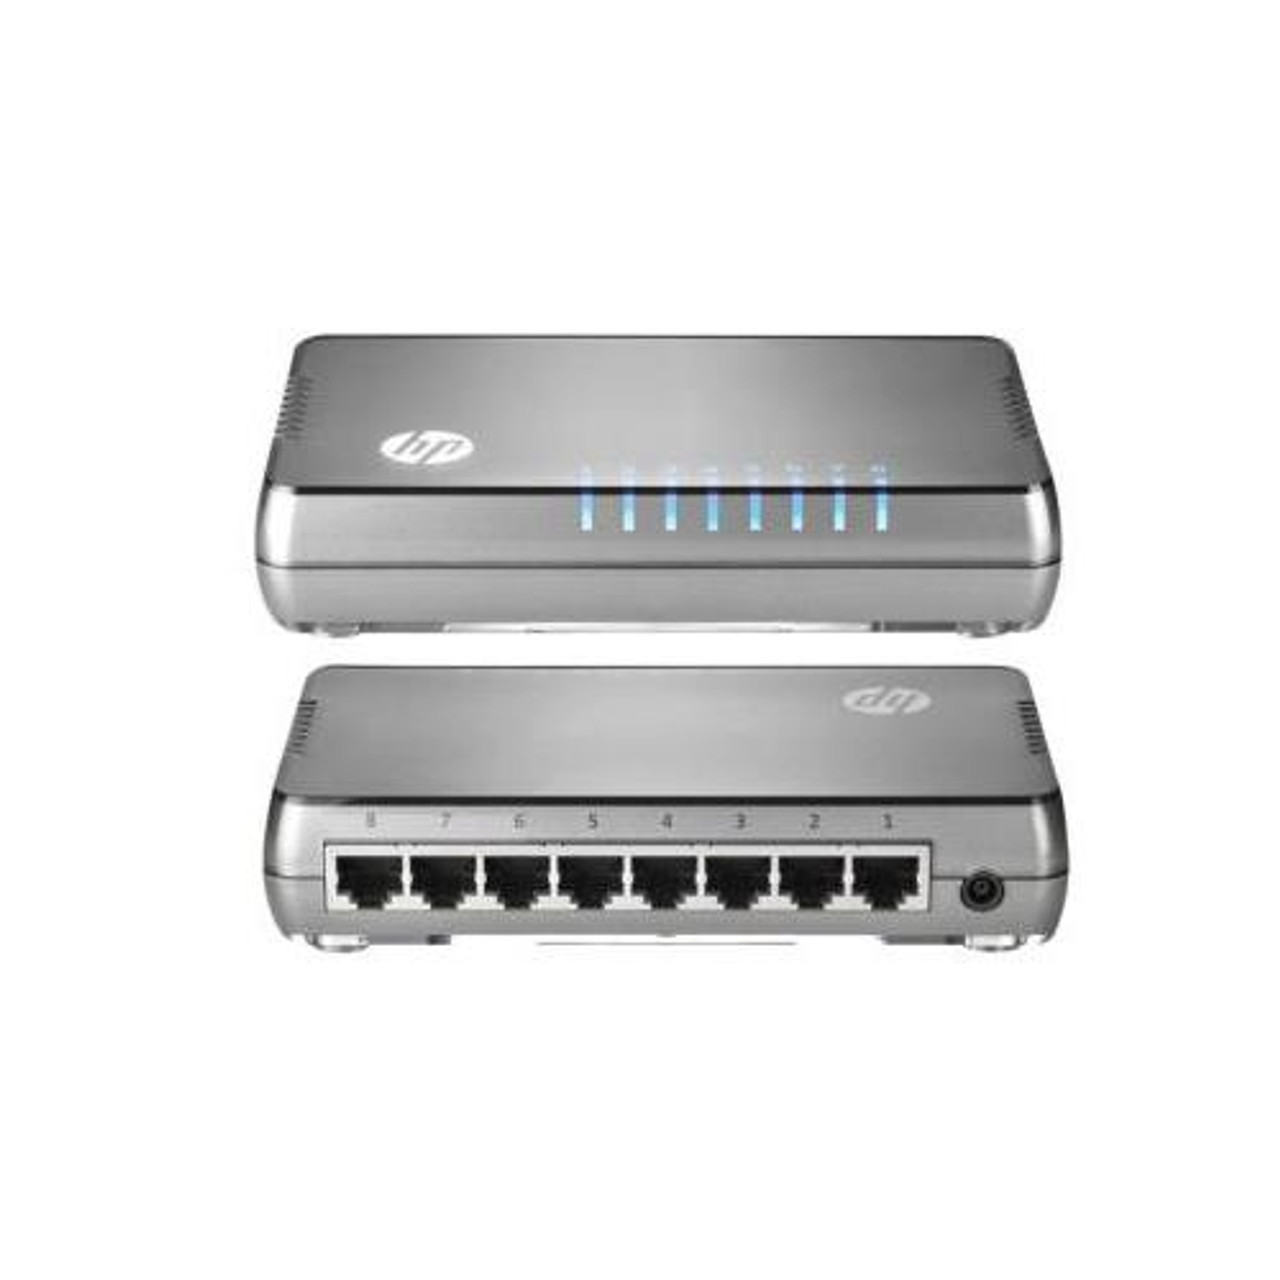 HP 1405-8 Switch J9793A 8 Port Network Enterprise LAN Gigabit New In Box 